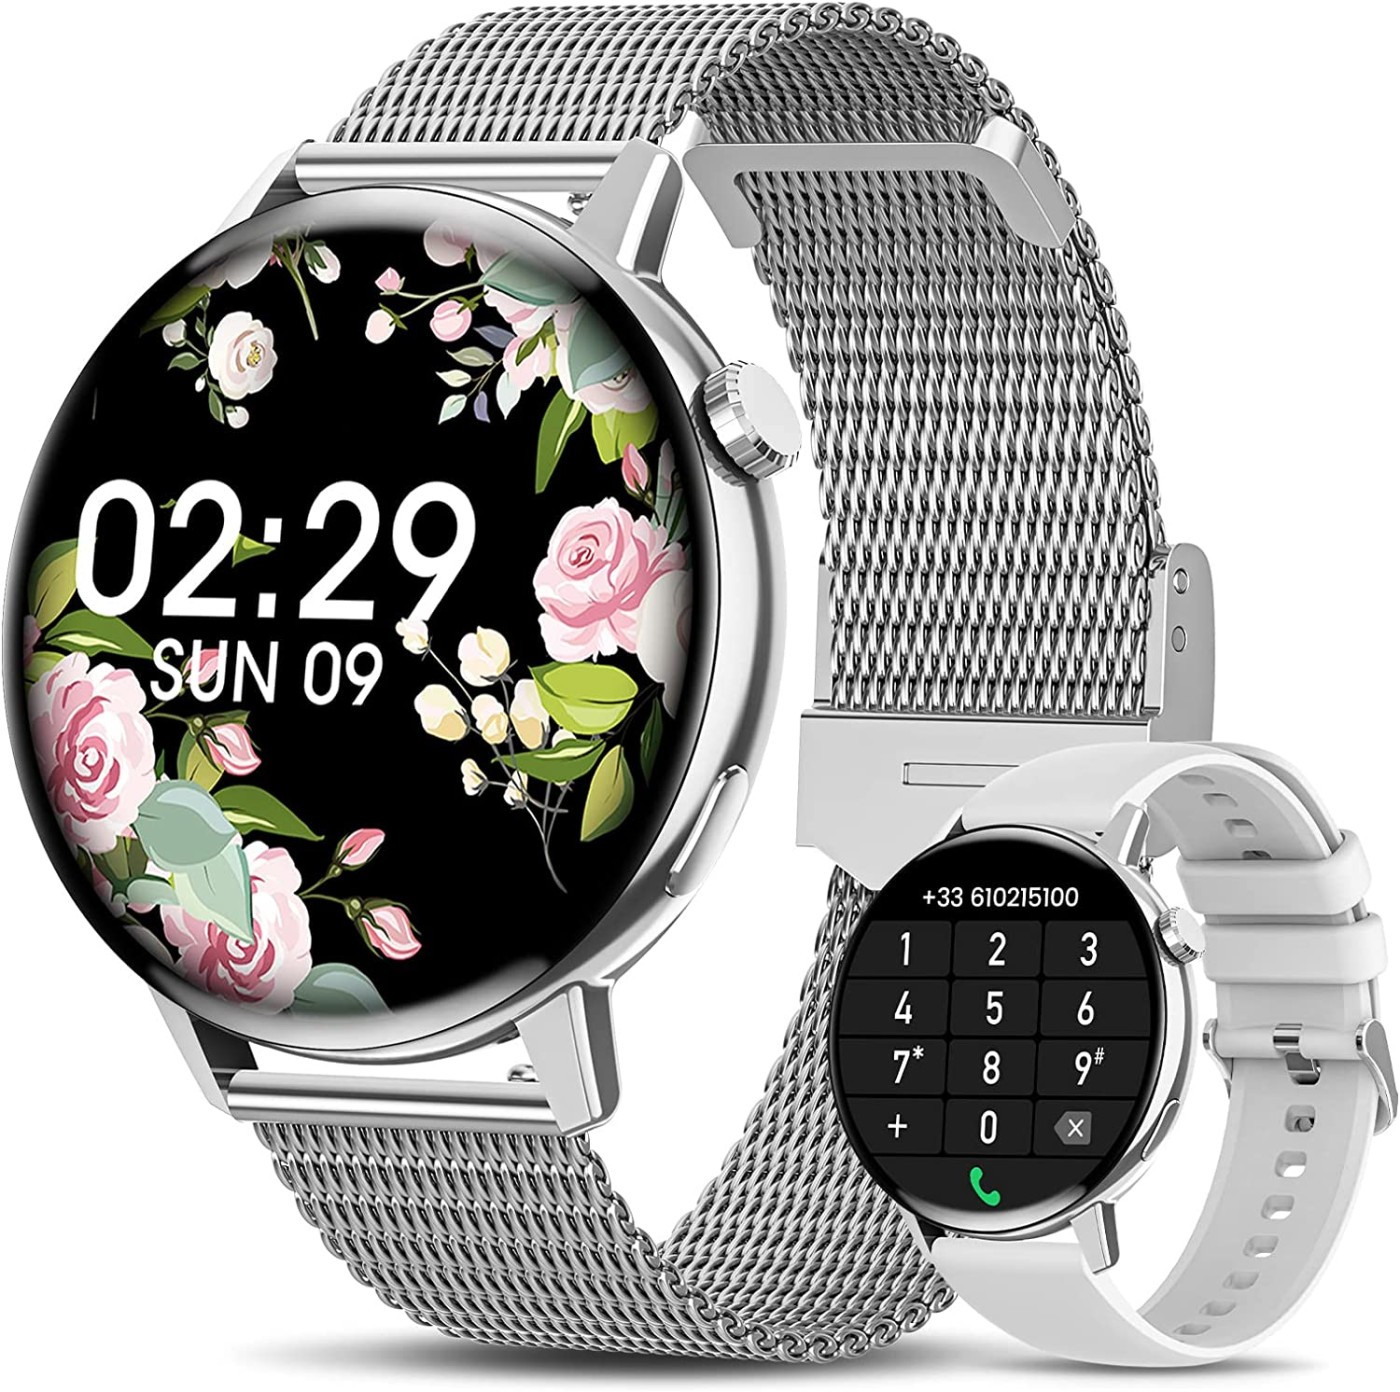 Louis Vuitton collabore avec Google pour une montre connectée